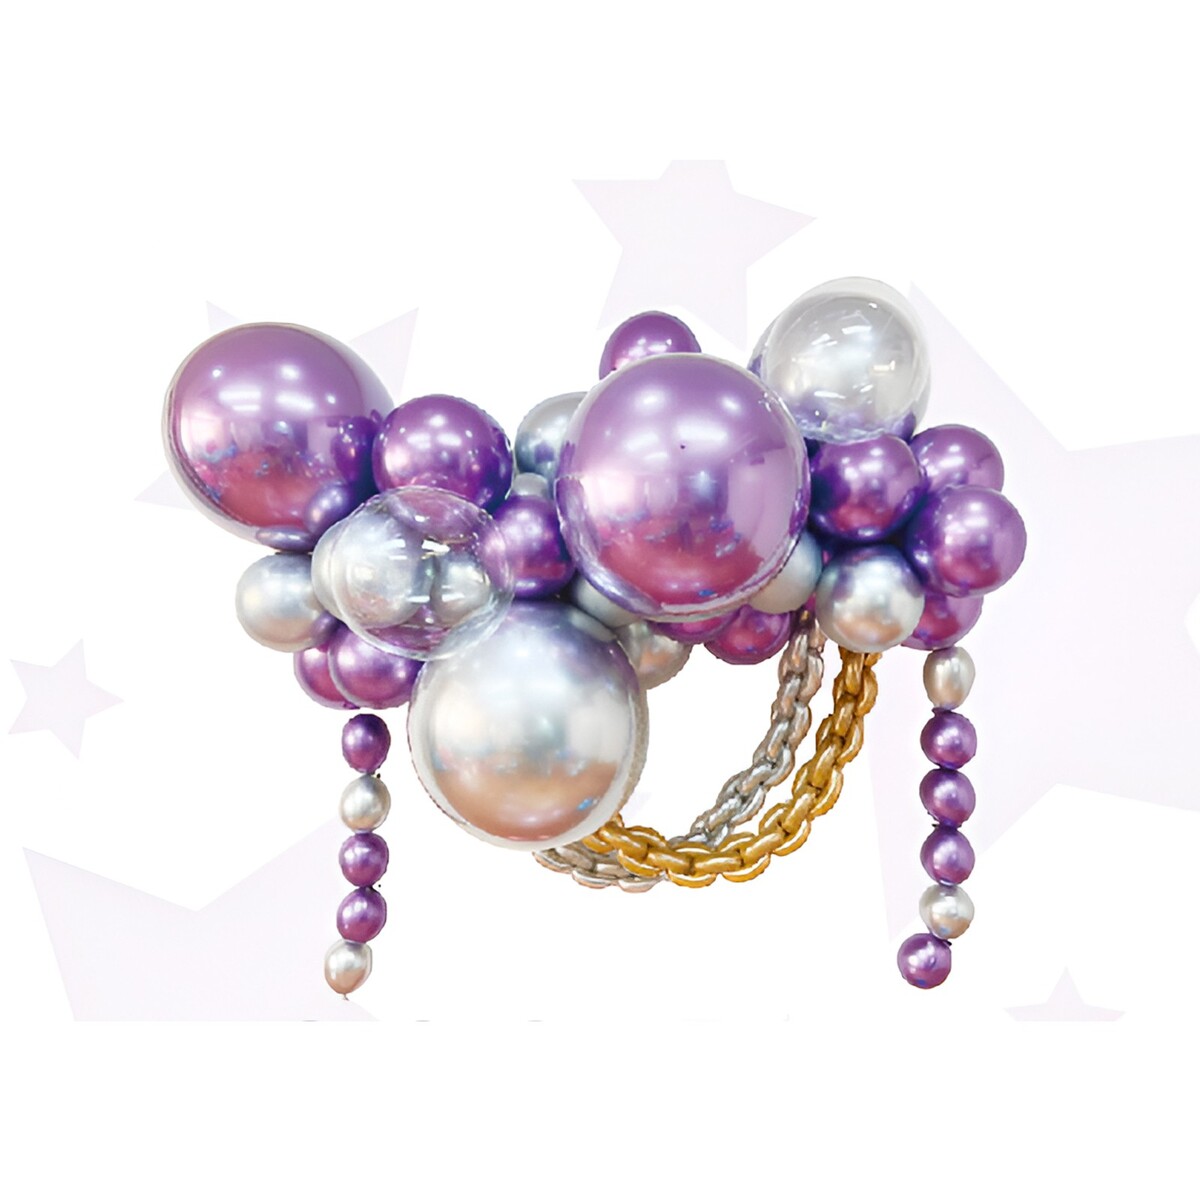 Набор для создания композиций из воздушных шаров, набор 52 шт., фиолетовый, серебро набор для создания украшений d